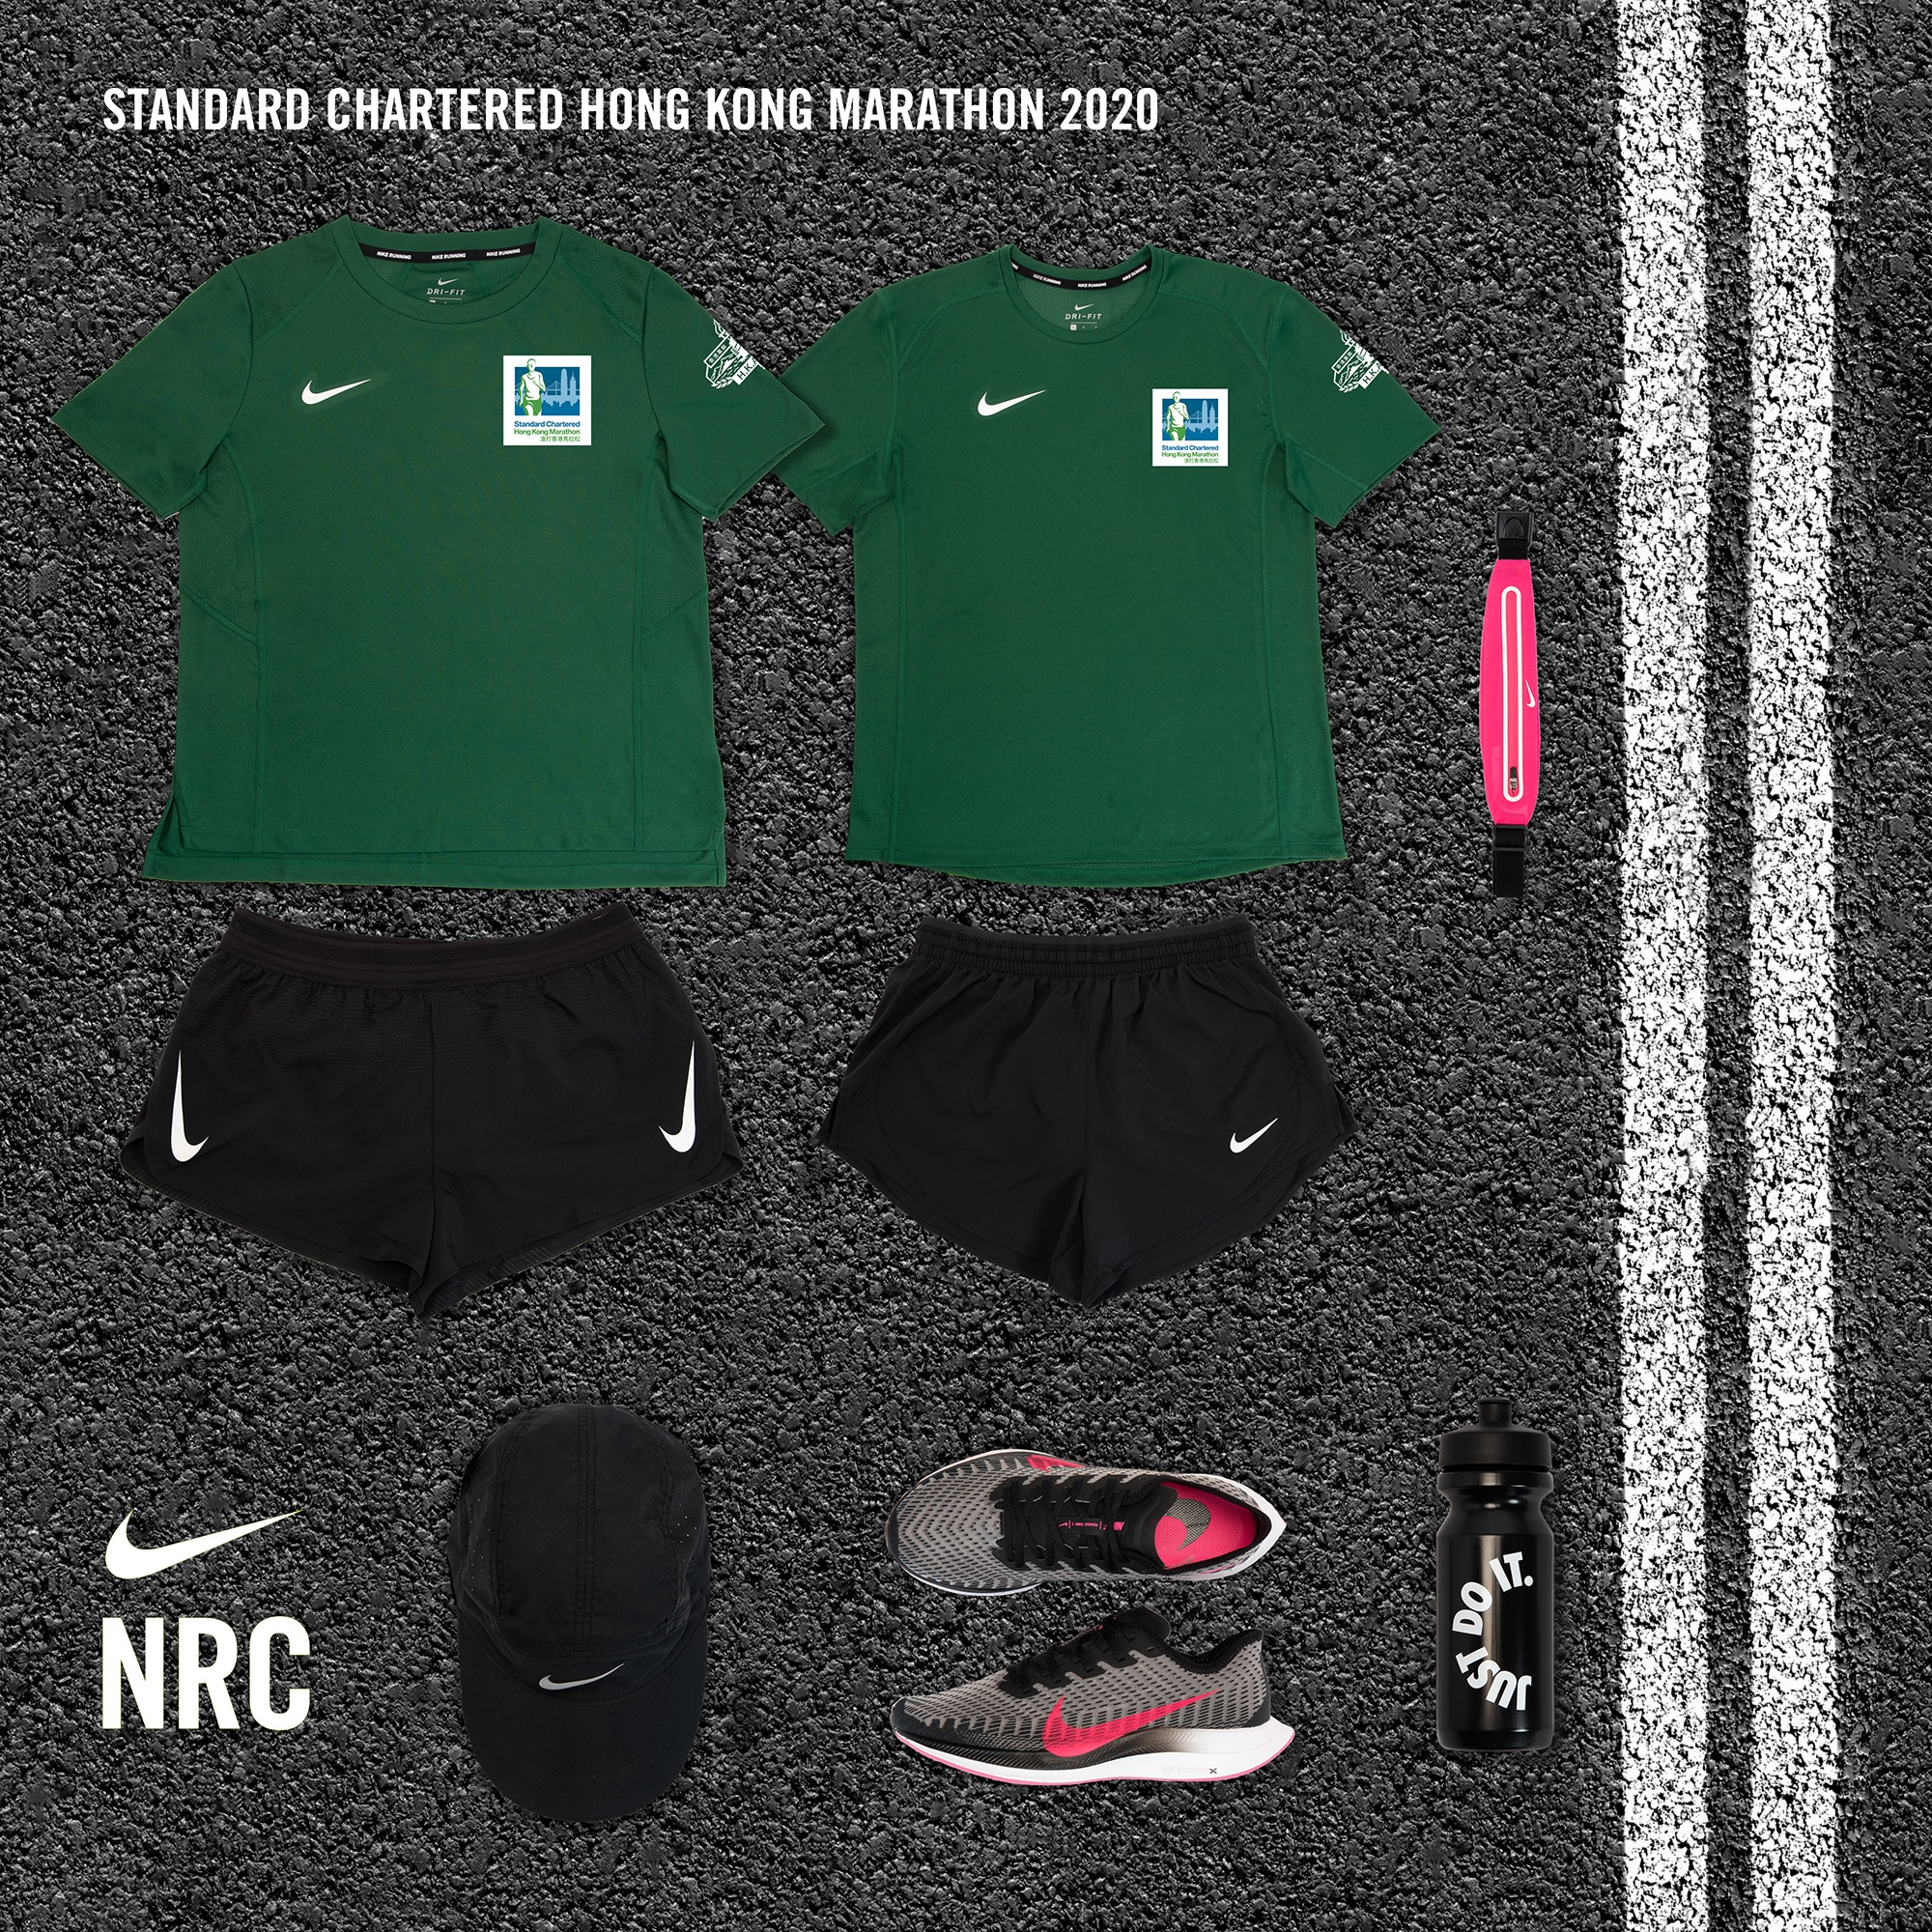 為突破整裝就緒！ 渣打香港馬拉松2020抽籤結果已經公佈！NIKE作為官方訓練伙伴，將為跑手提供男、女裝比賽上衣，為賽事作好準備。成功被挑選的跑手可以到以下店舖試穿及量身，以便選擇最合適自己的戰衣，裝備自己衝向終點，實踐突破！ 試穿服務日期：2019年10月10日 (四) 至28日 (一)... 指定NIKE店舖：